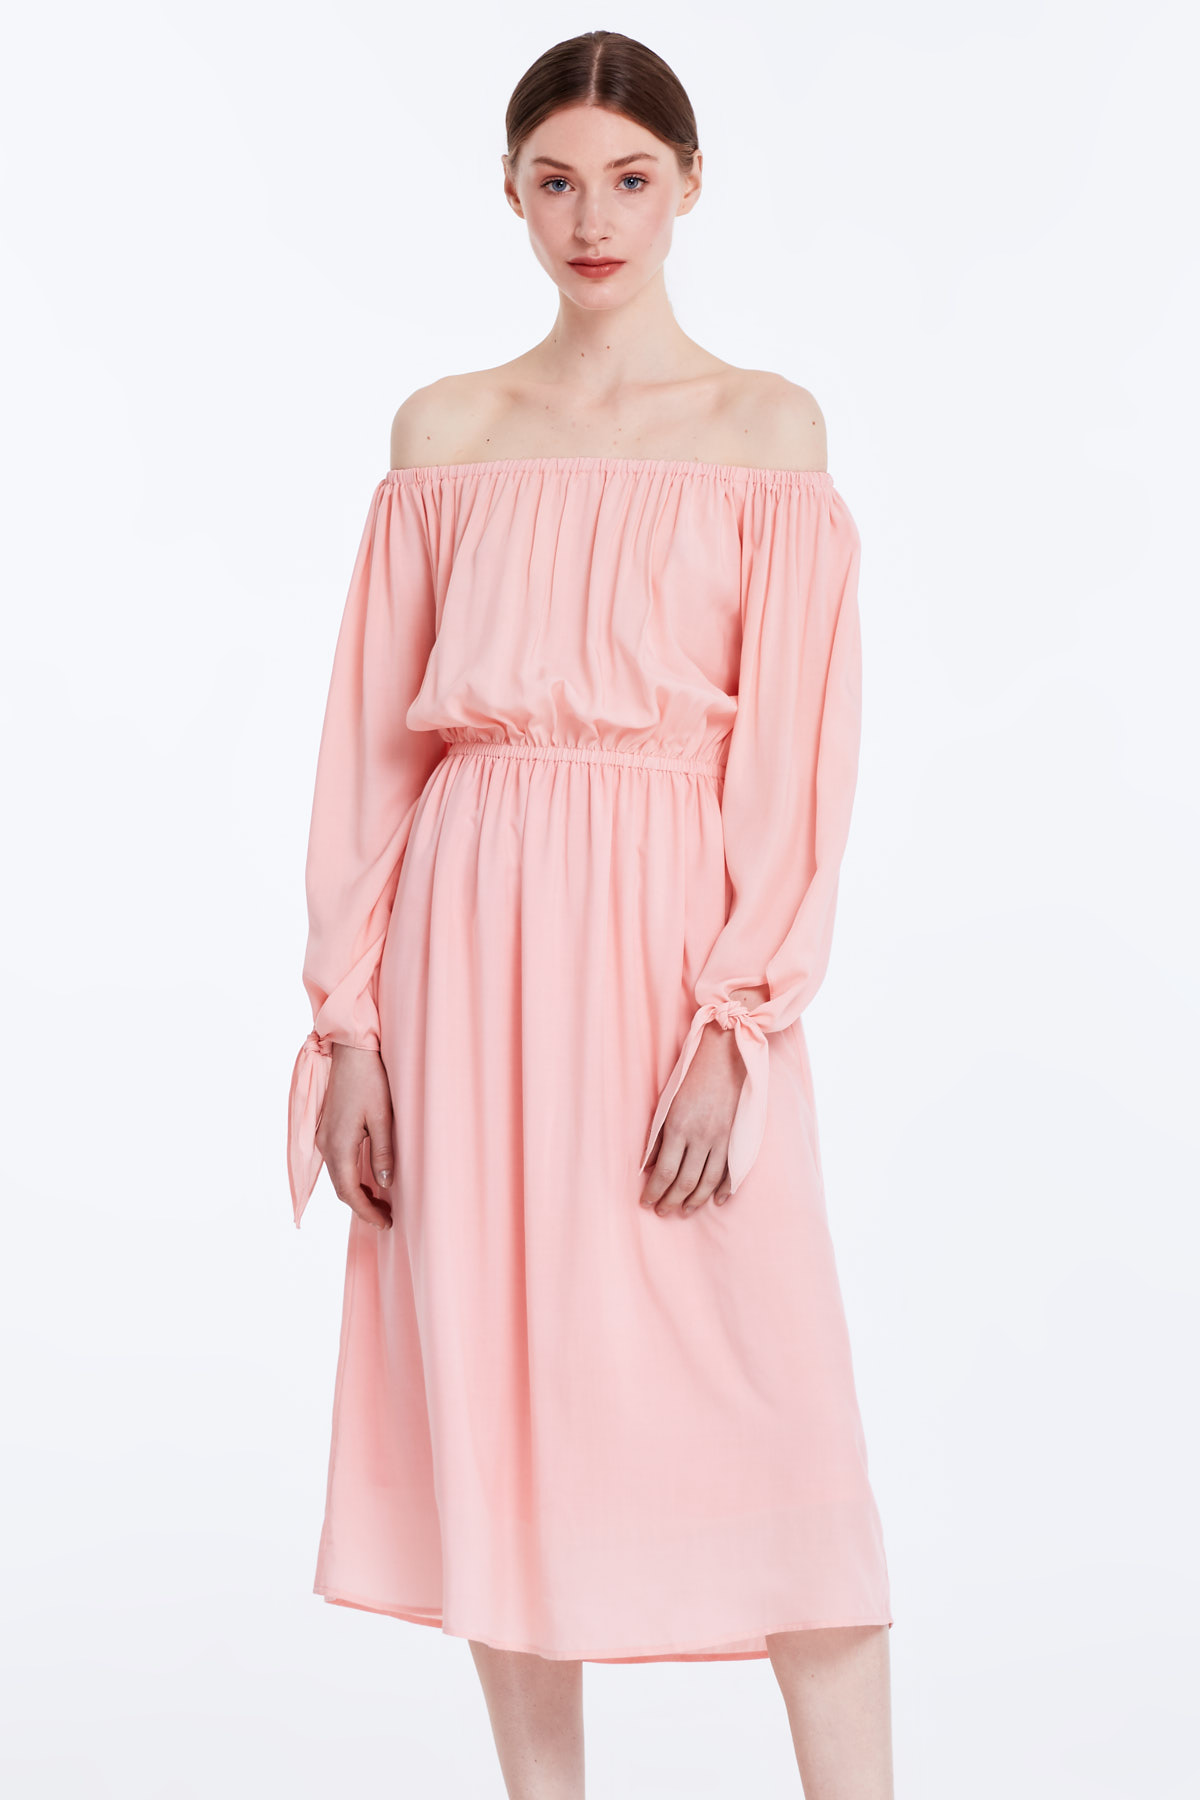 Off-shoulder powder pink dress, photo 1